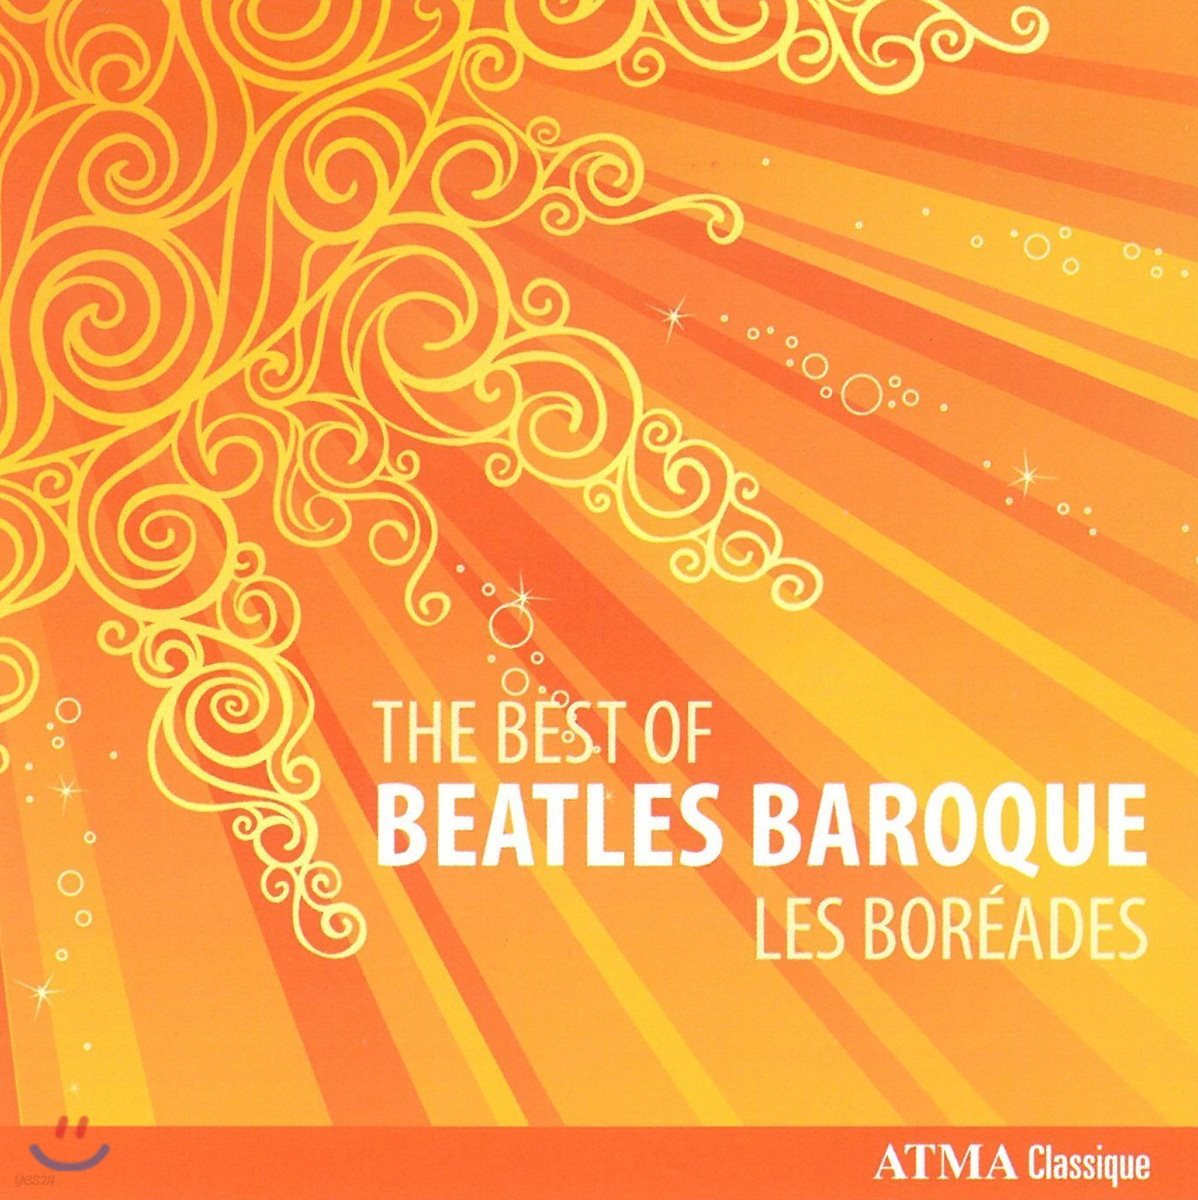 Les Boreades 바로크 앙상블로 듣는 비틀즈 (The Best Of Beatles Baroque)